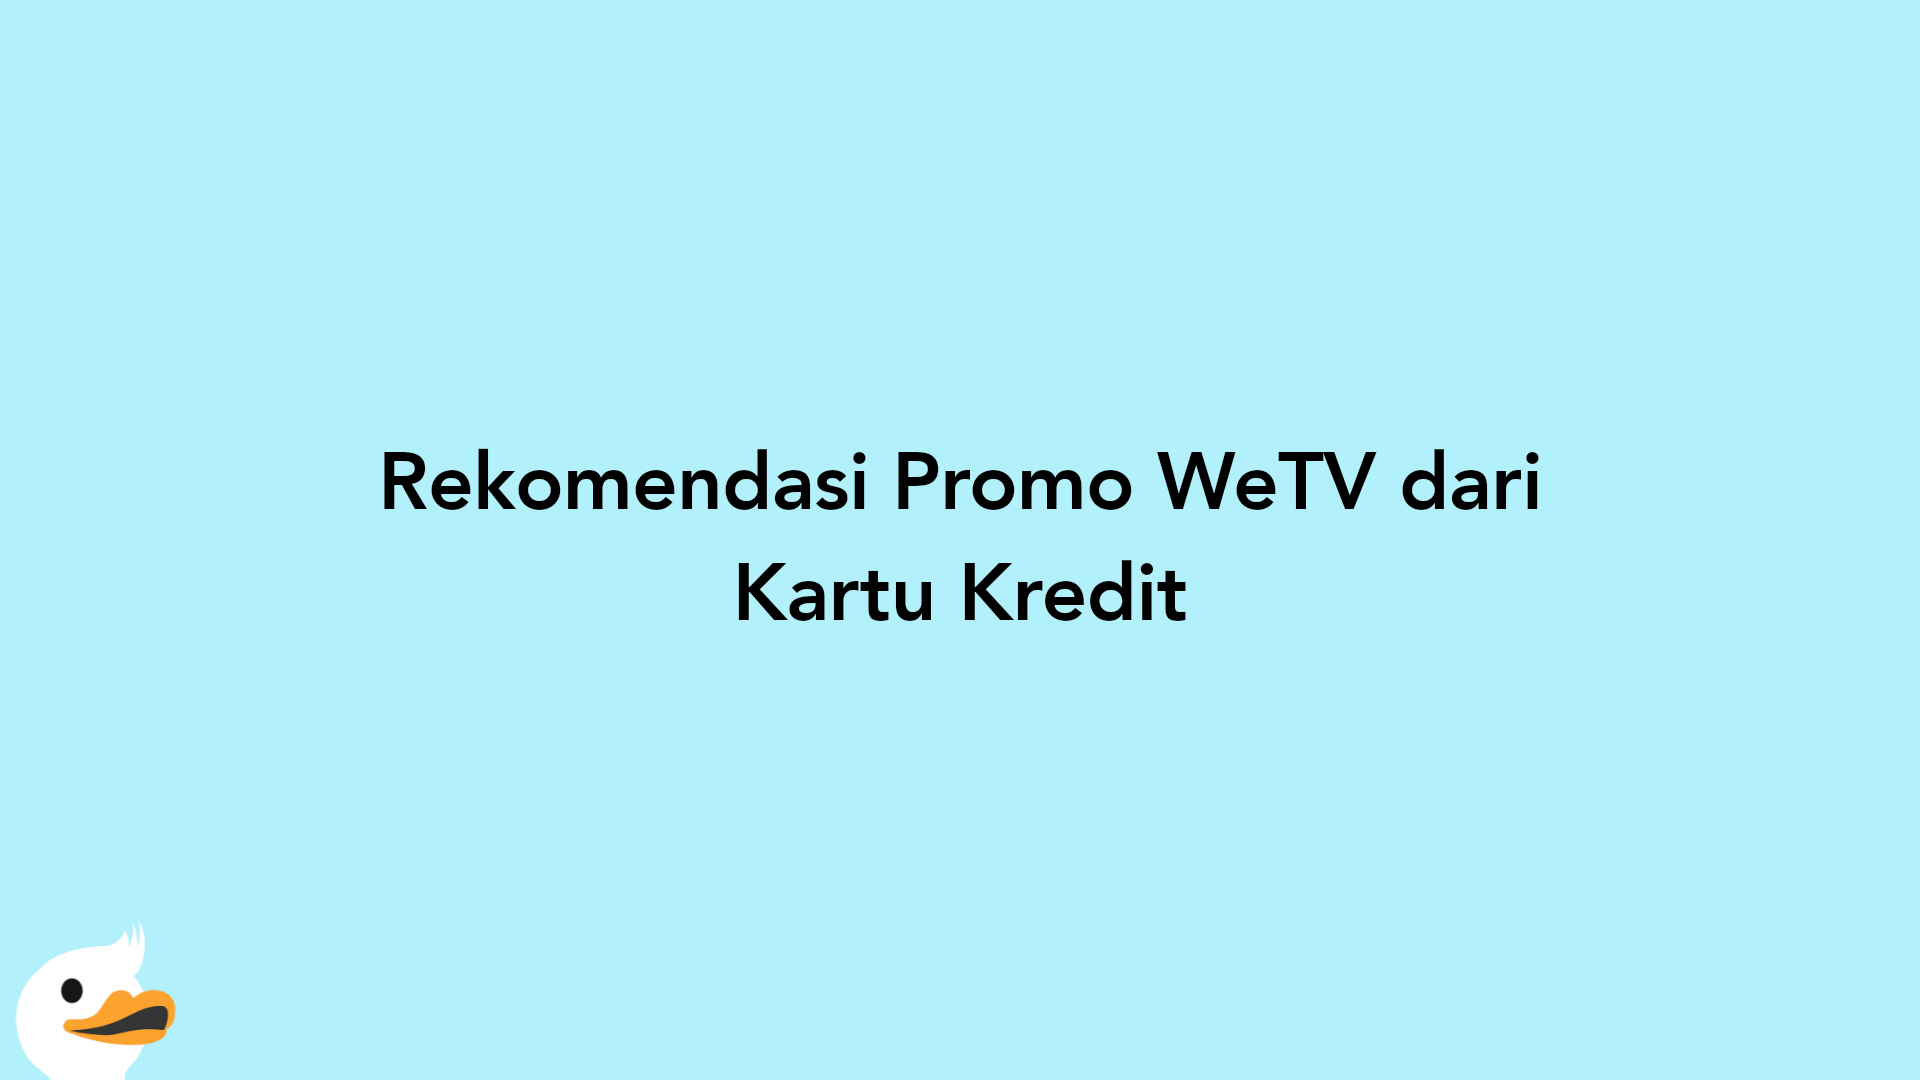 Rekomendasi Promo WeTV dari Kartu Kredit